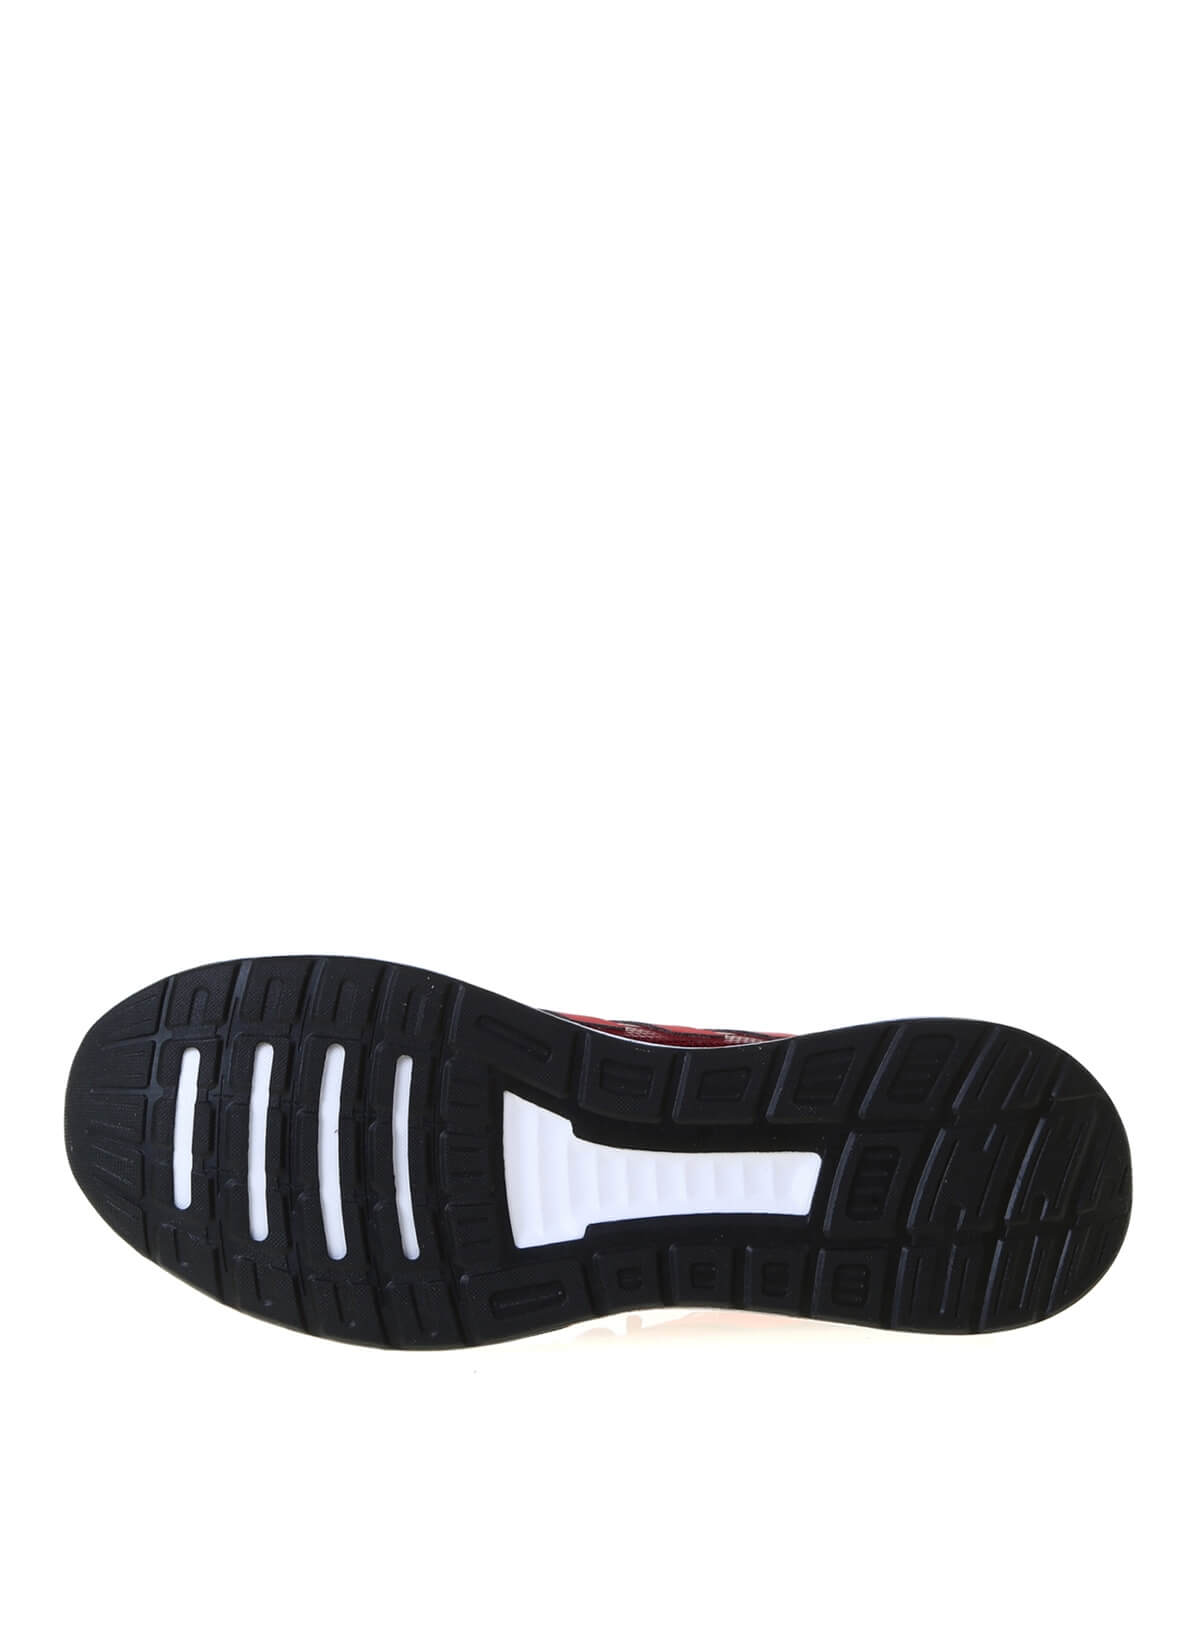 Adidas FW5061 RUNFALCON Erkek Koşu Ayakkabısı